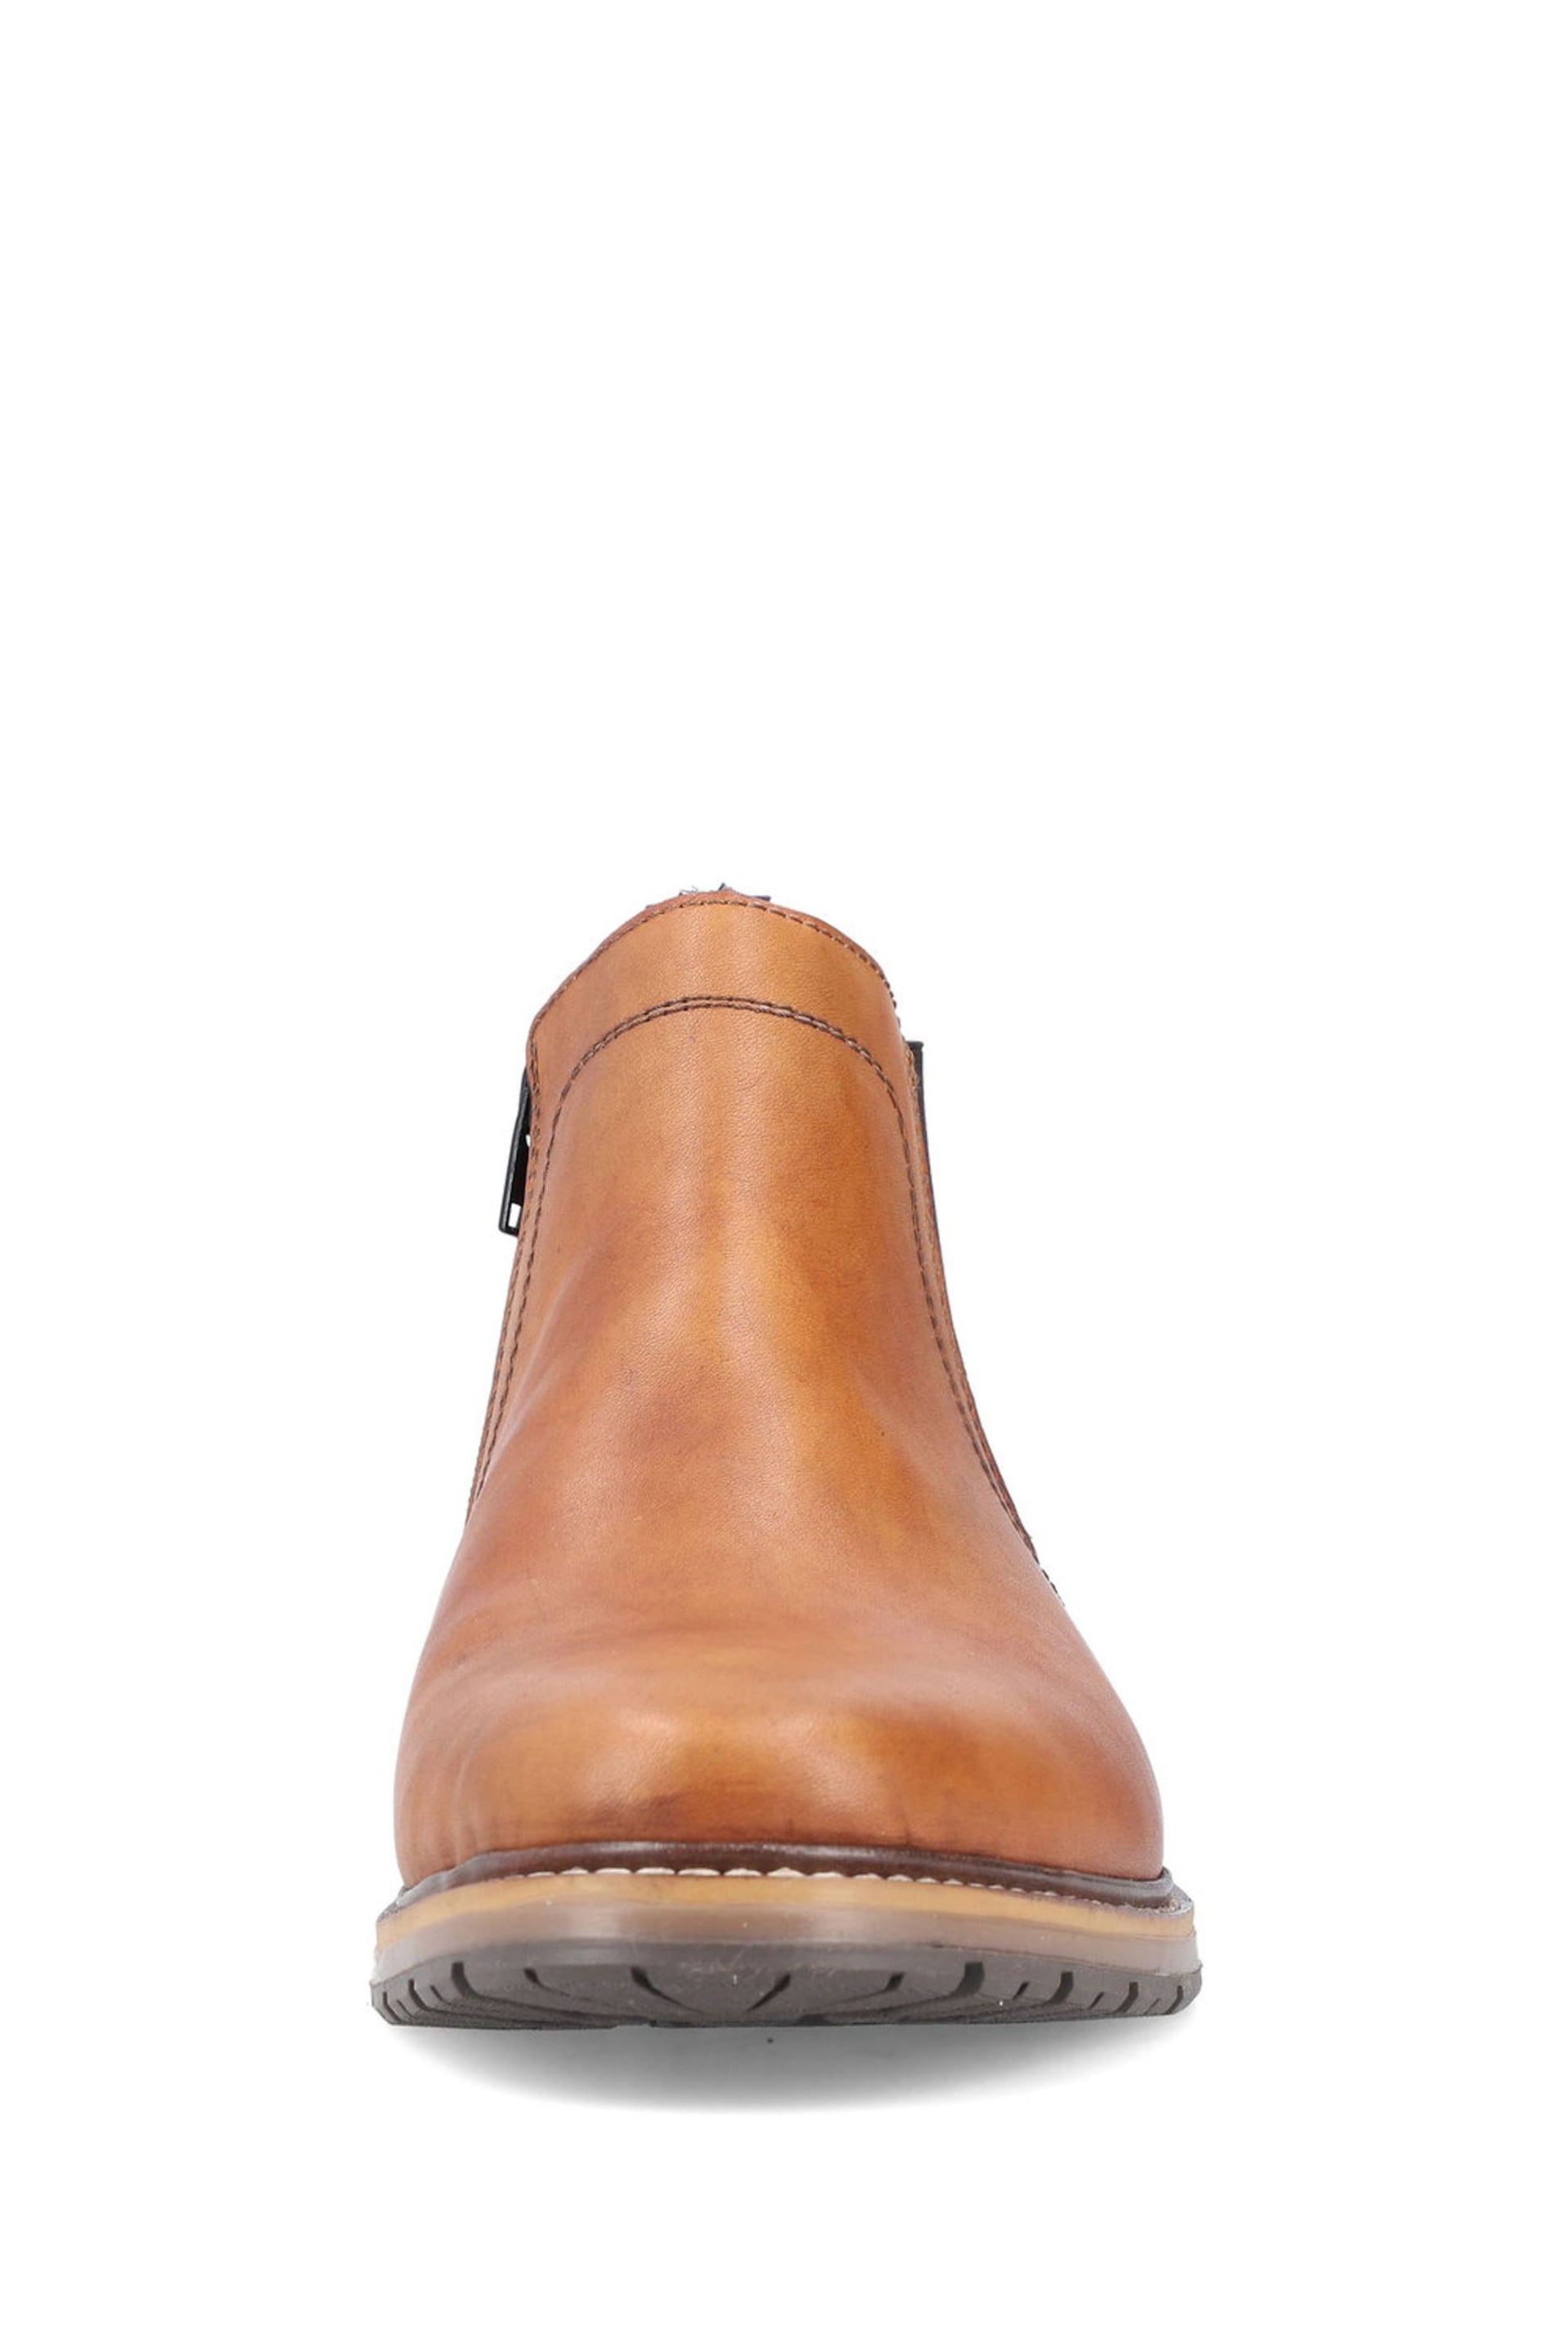 Rieker Mens Zipper Brown Boots - Image 5 of 11